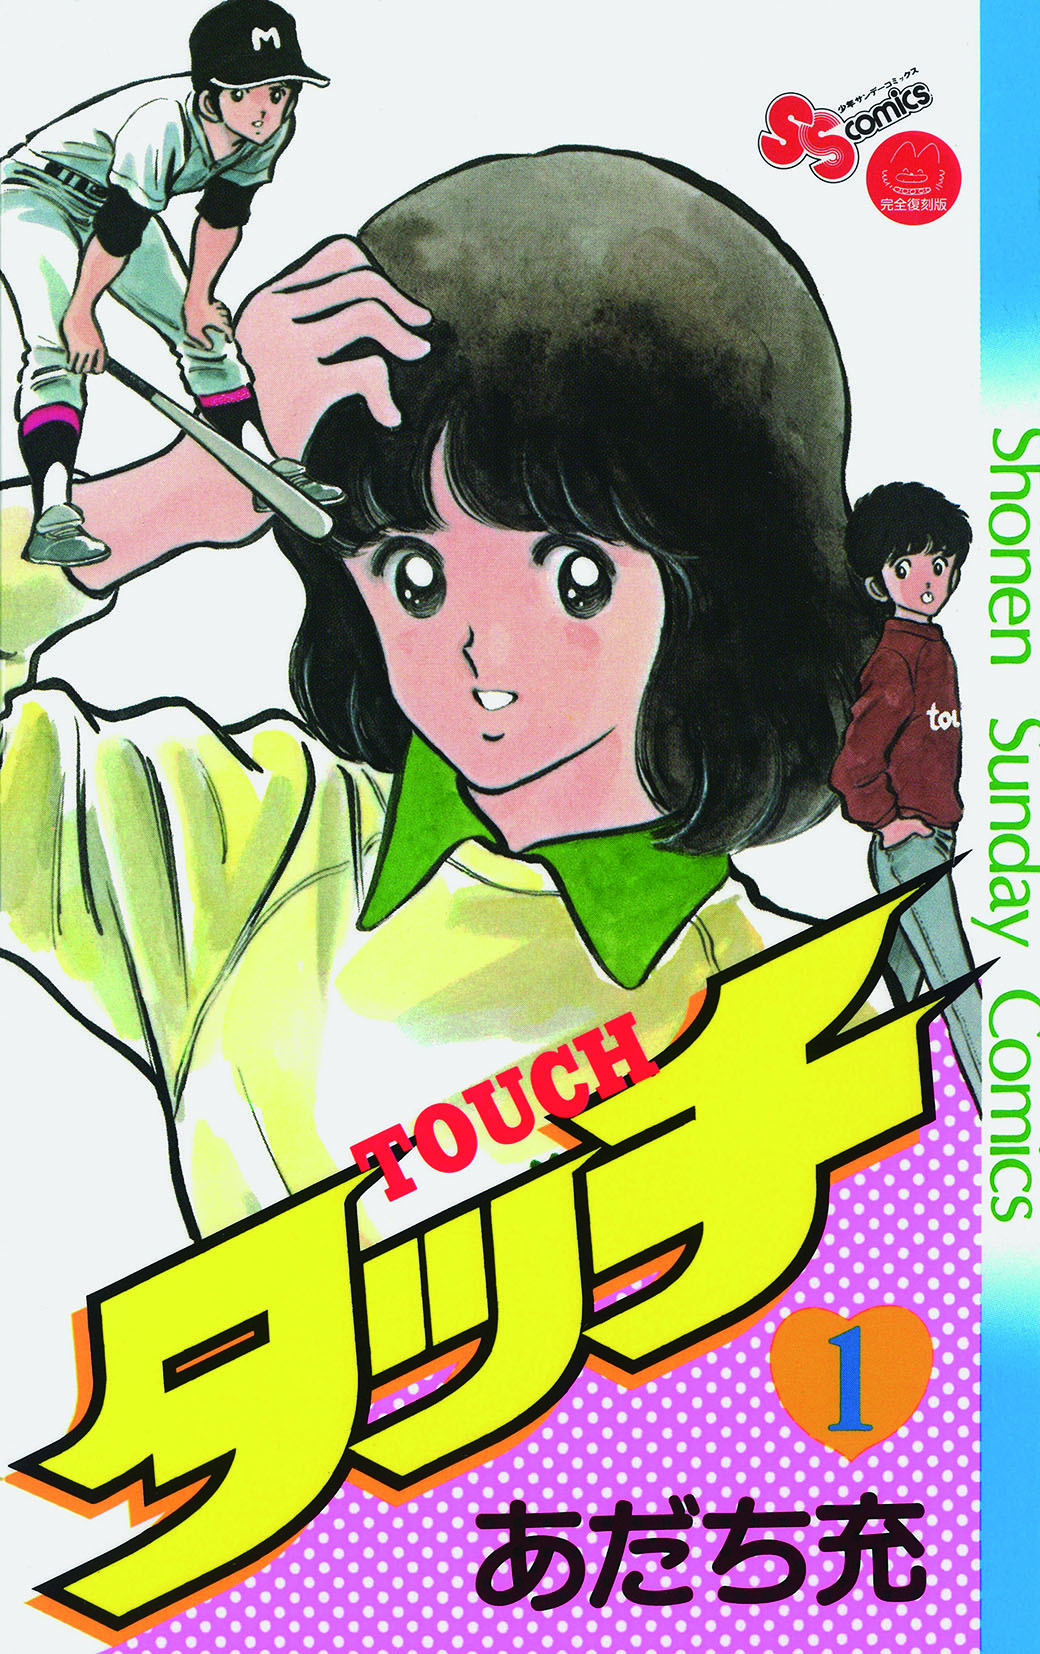 Mix Manga wird im Oktober fortgesetzt, nachdem die Pandemie eine Unterbrechung verursacht hat